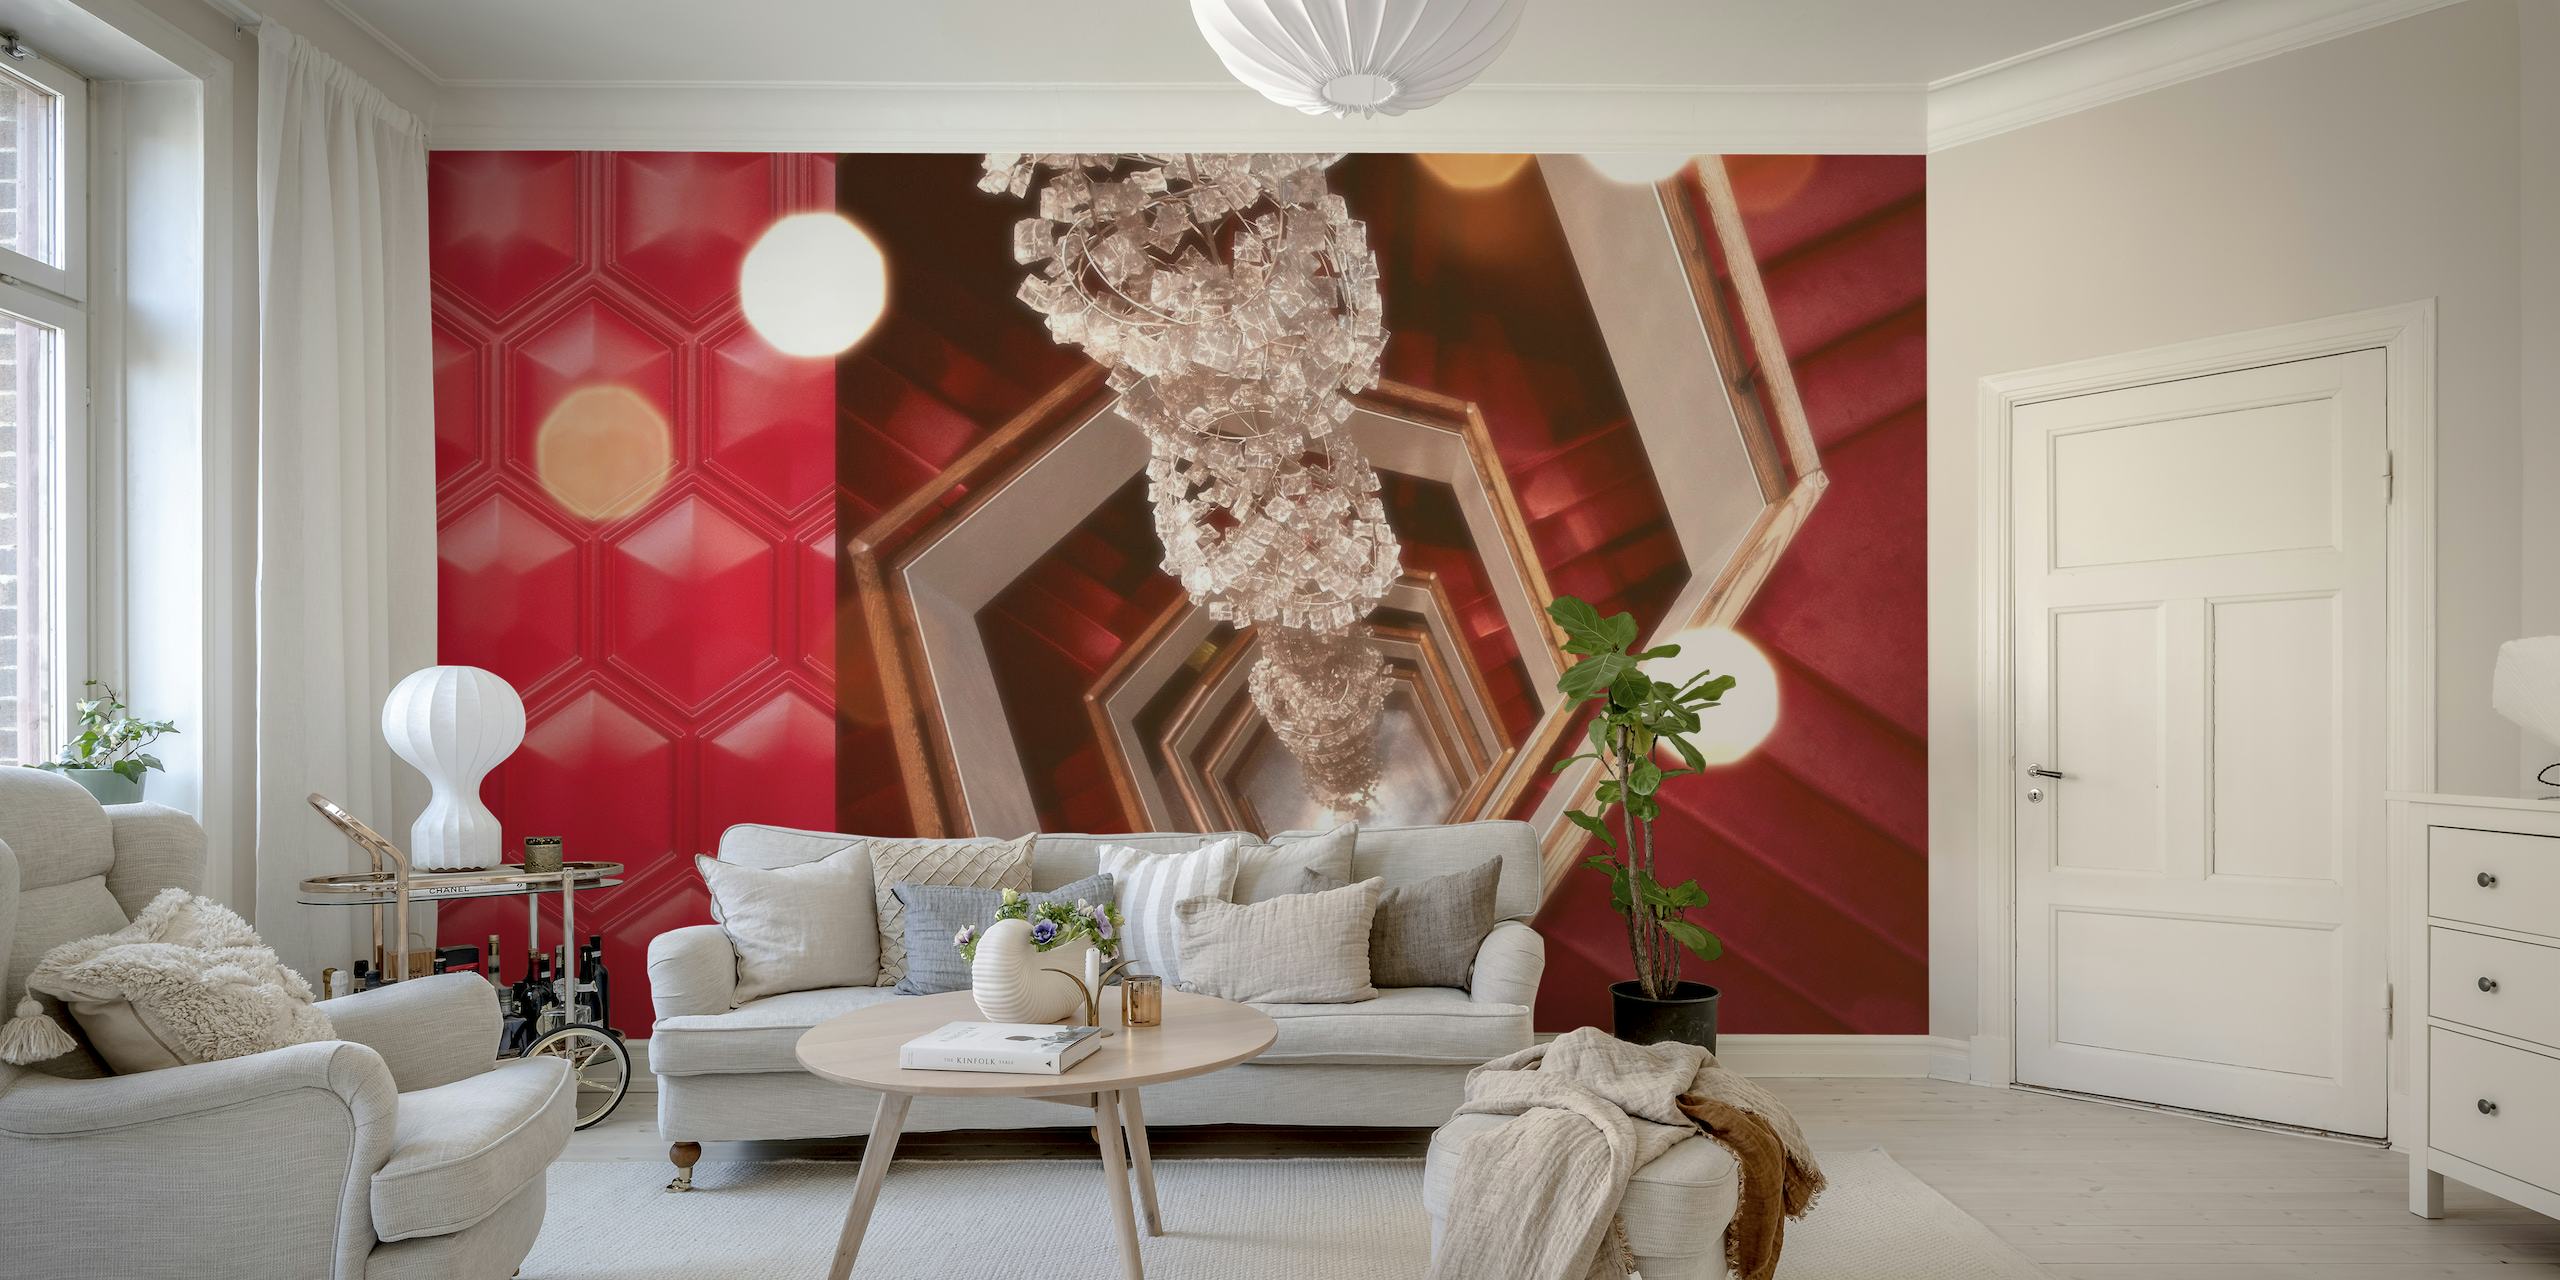 Lustre vintage et motifs géométriques dans une décoration murale inspirée d'une salle de cinéma